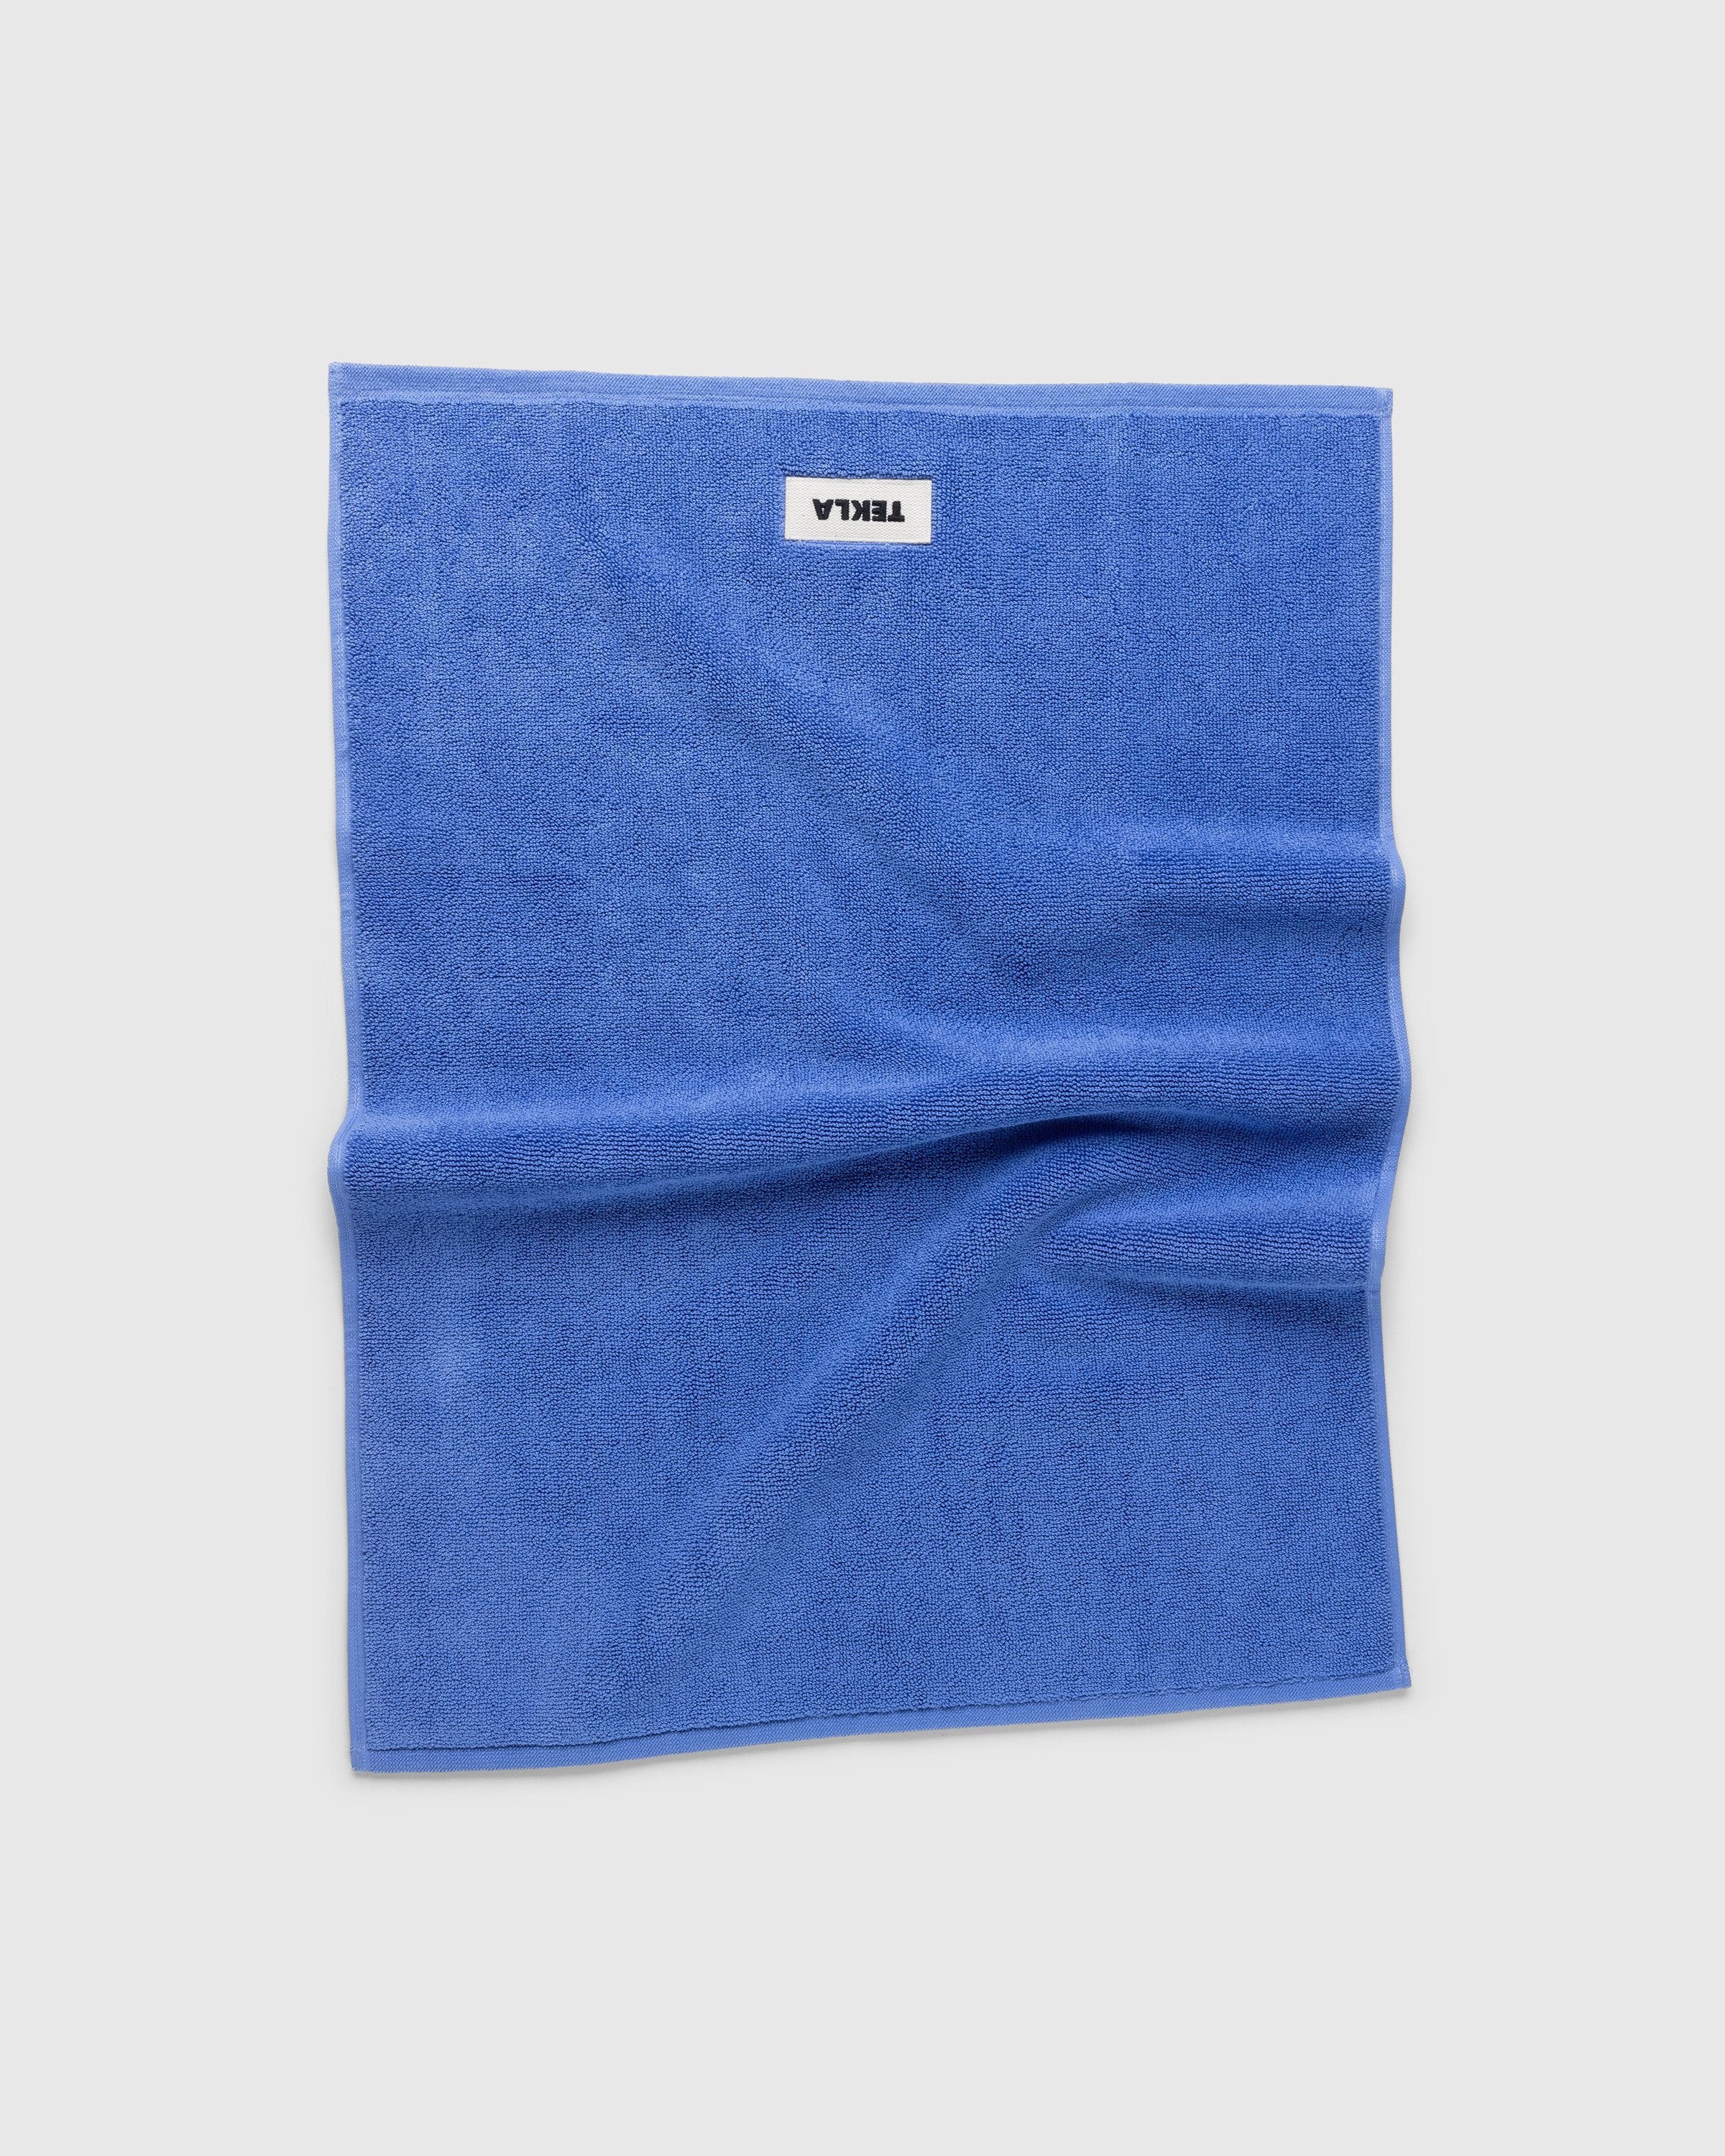 Tekla - Bath Mat Solid Clear Blue - Lifestyle - Blue - Image 1